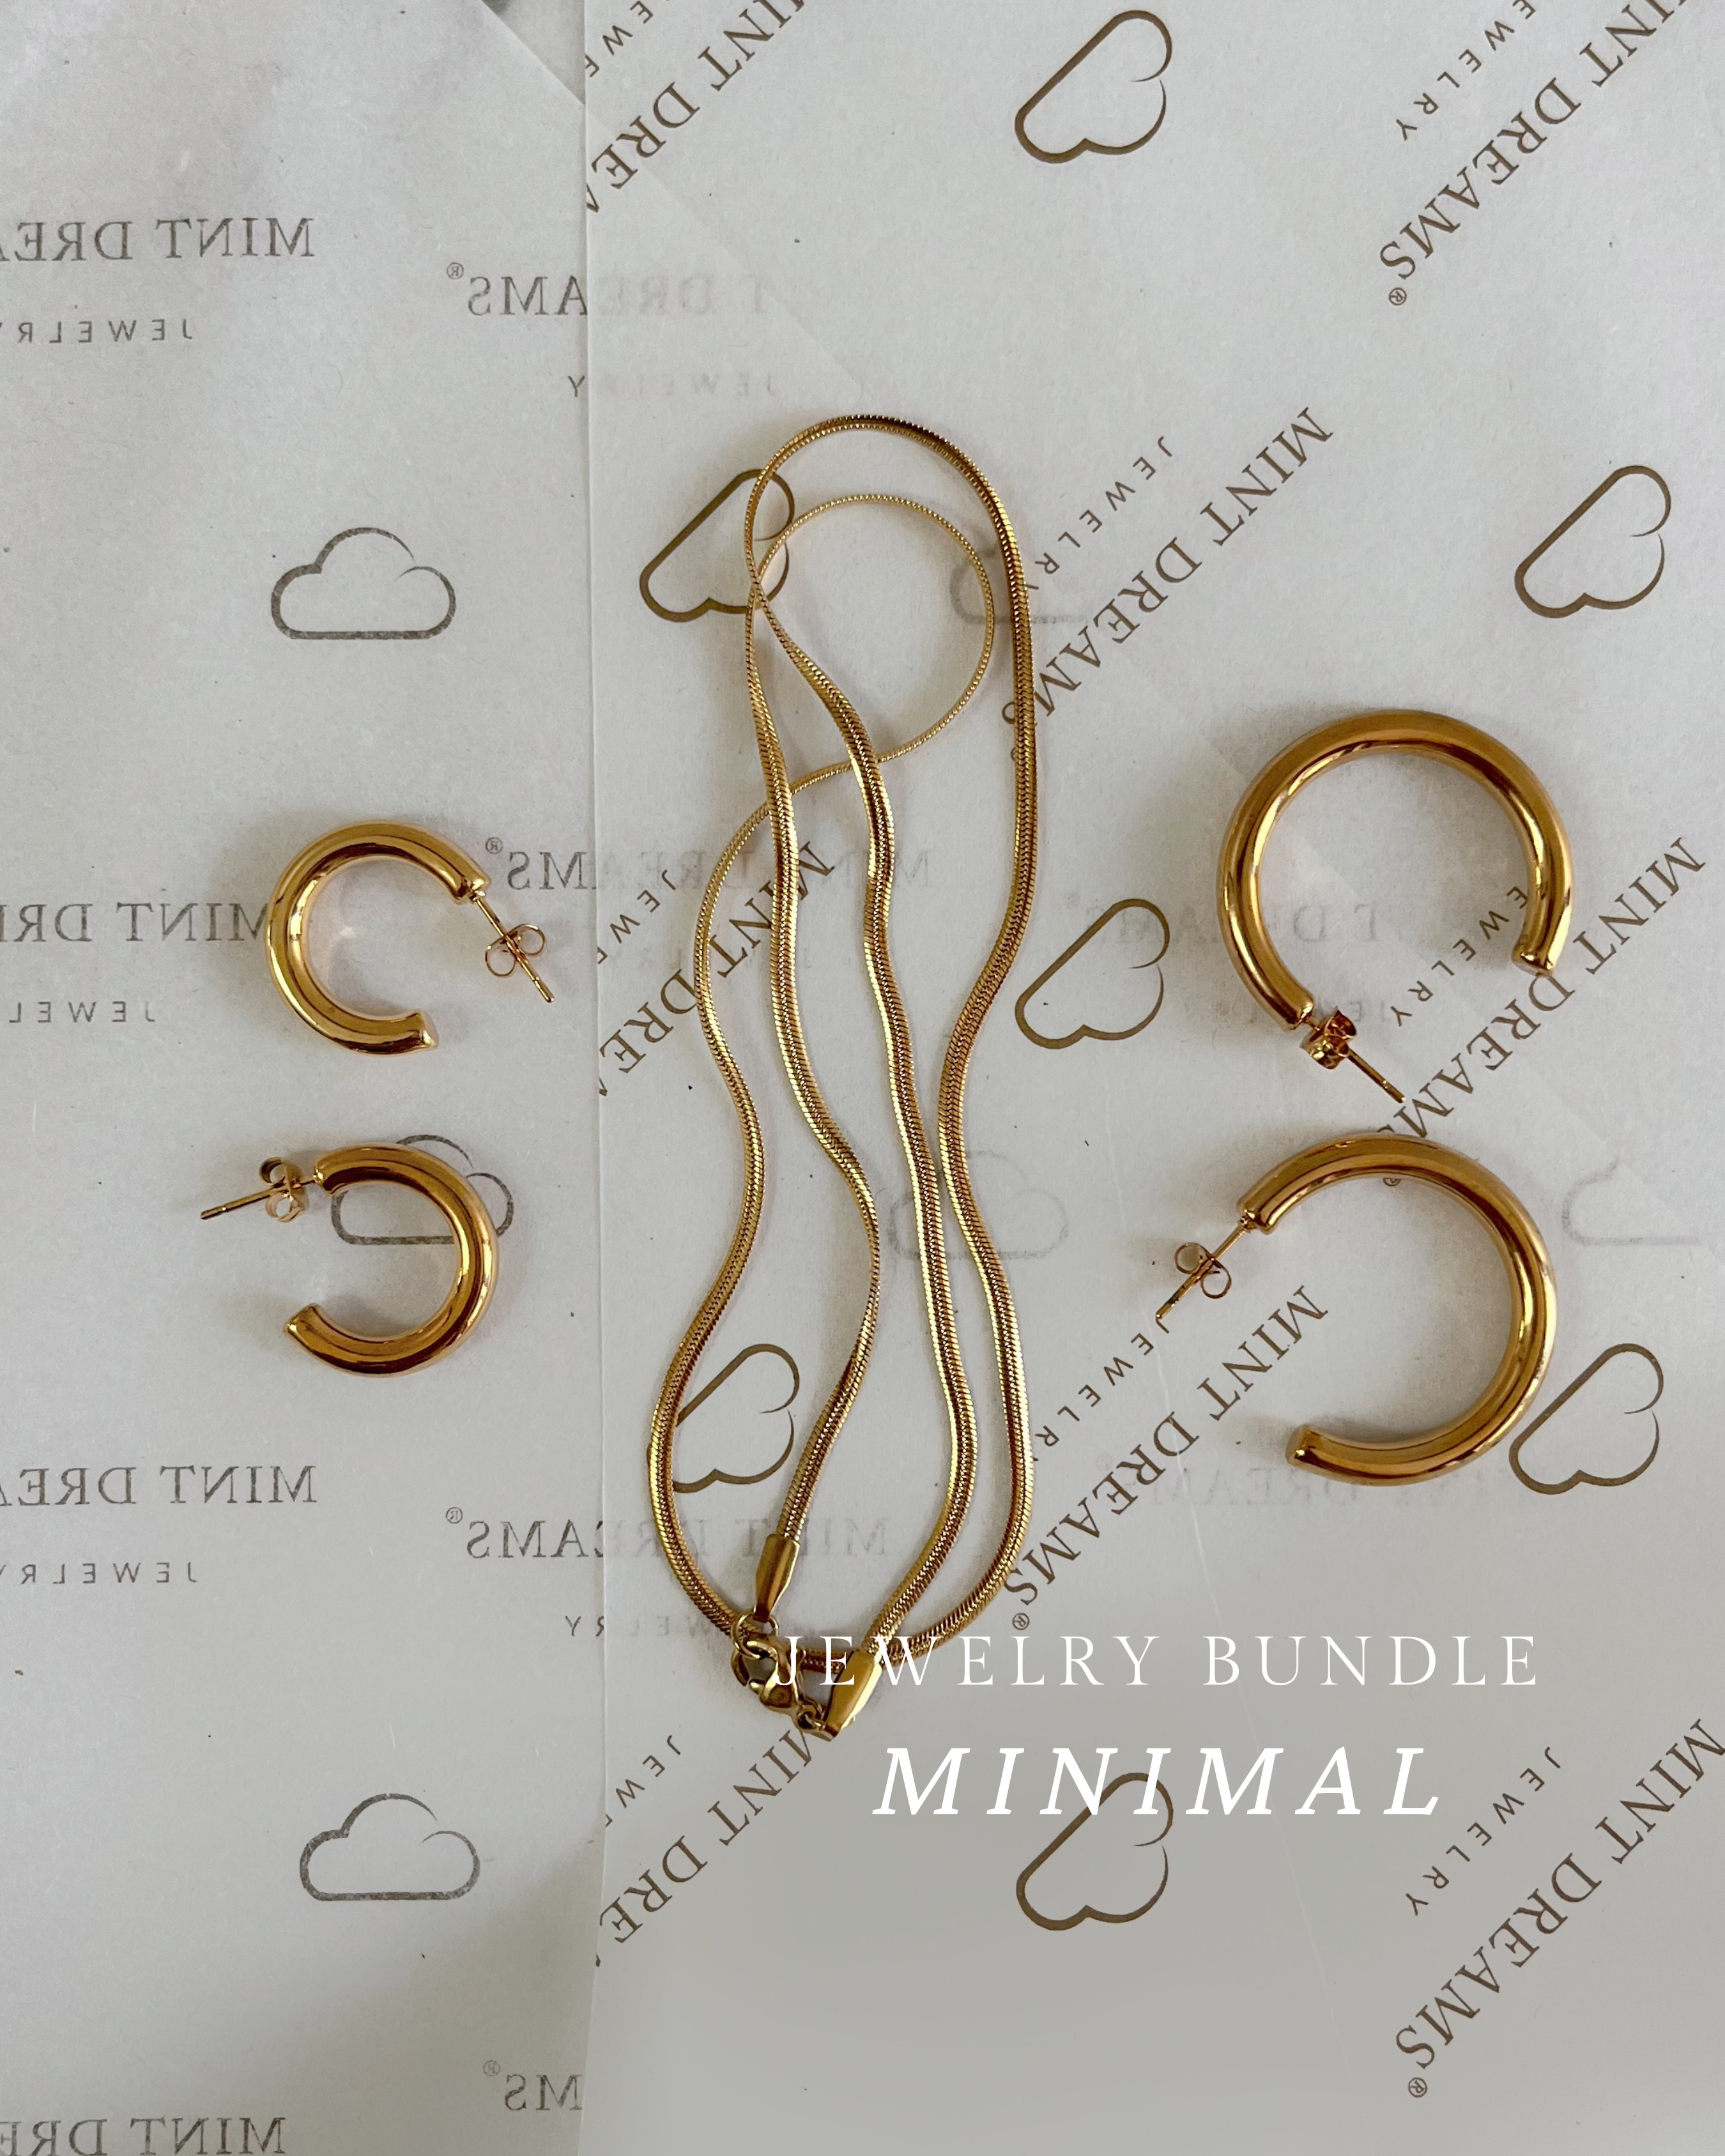 Jewelry Bundle MINIMAL